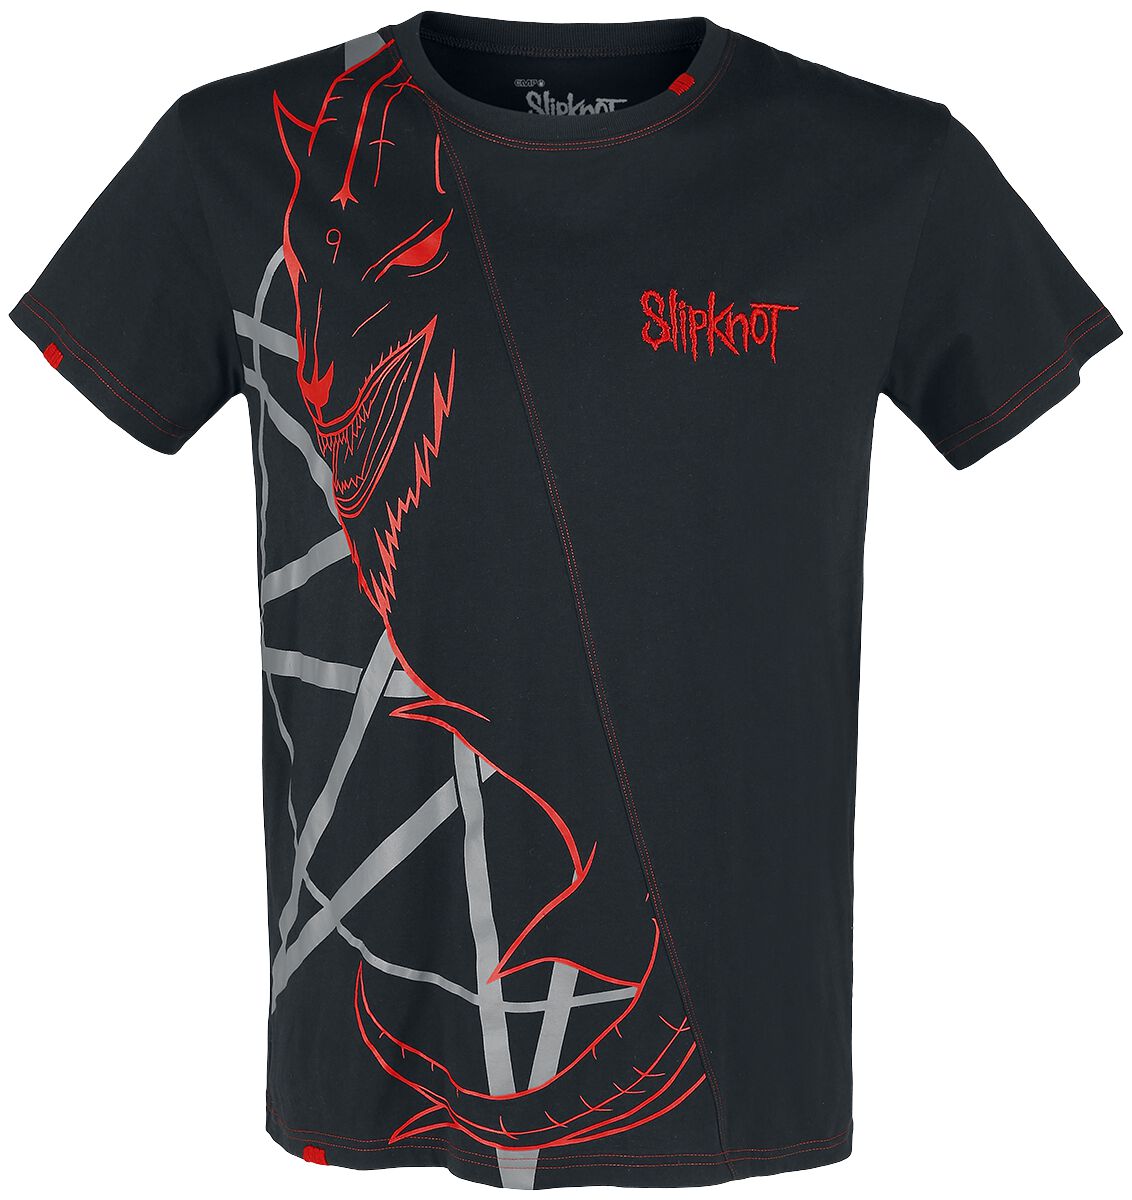 Slipknot T-Shirt - EMP Signature Collection - S bis 5XL - für Männer - Größe M - schwarz/rot  - EMP exklusives Merchandise!